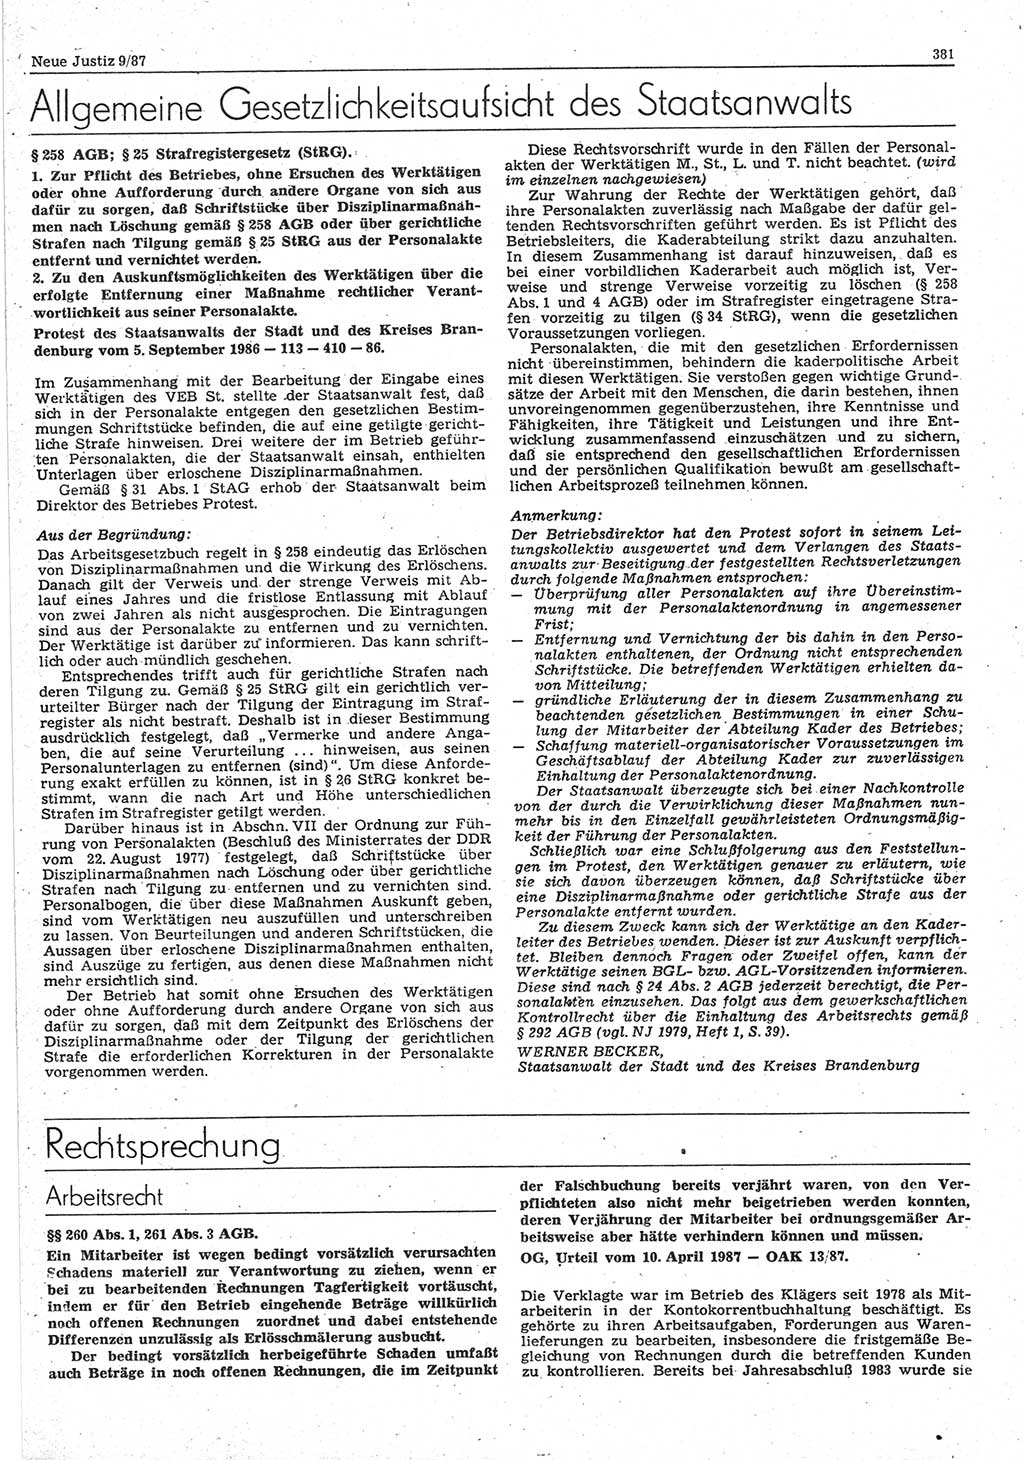 Neue Justiz (NJ), Zeitschrift für sozialistisches Recht und Gesetzlichkeit [Deutsche Demokratische Republik (DDR)], 41. Jahrgang 1987, Seite 381 (NJ DDR 1987, S. 381)